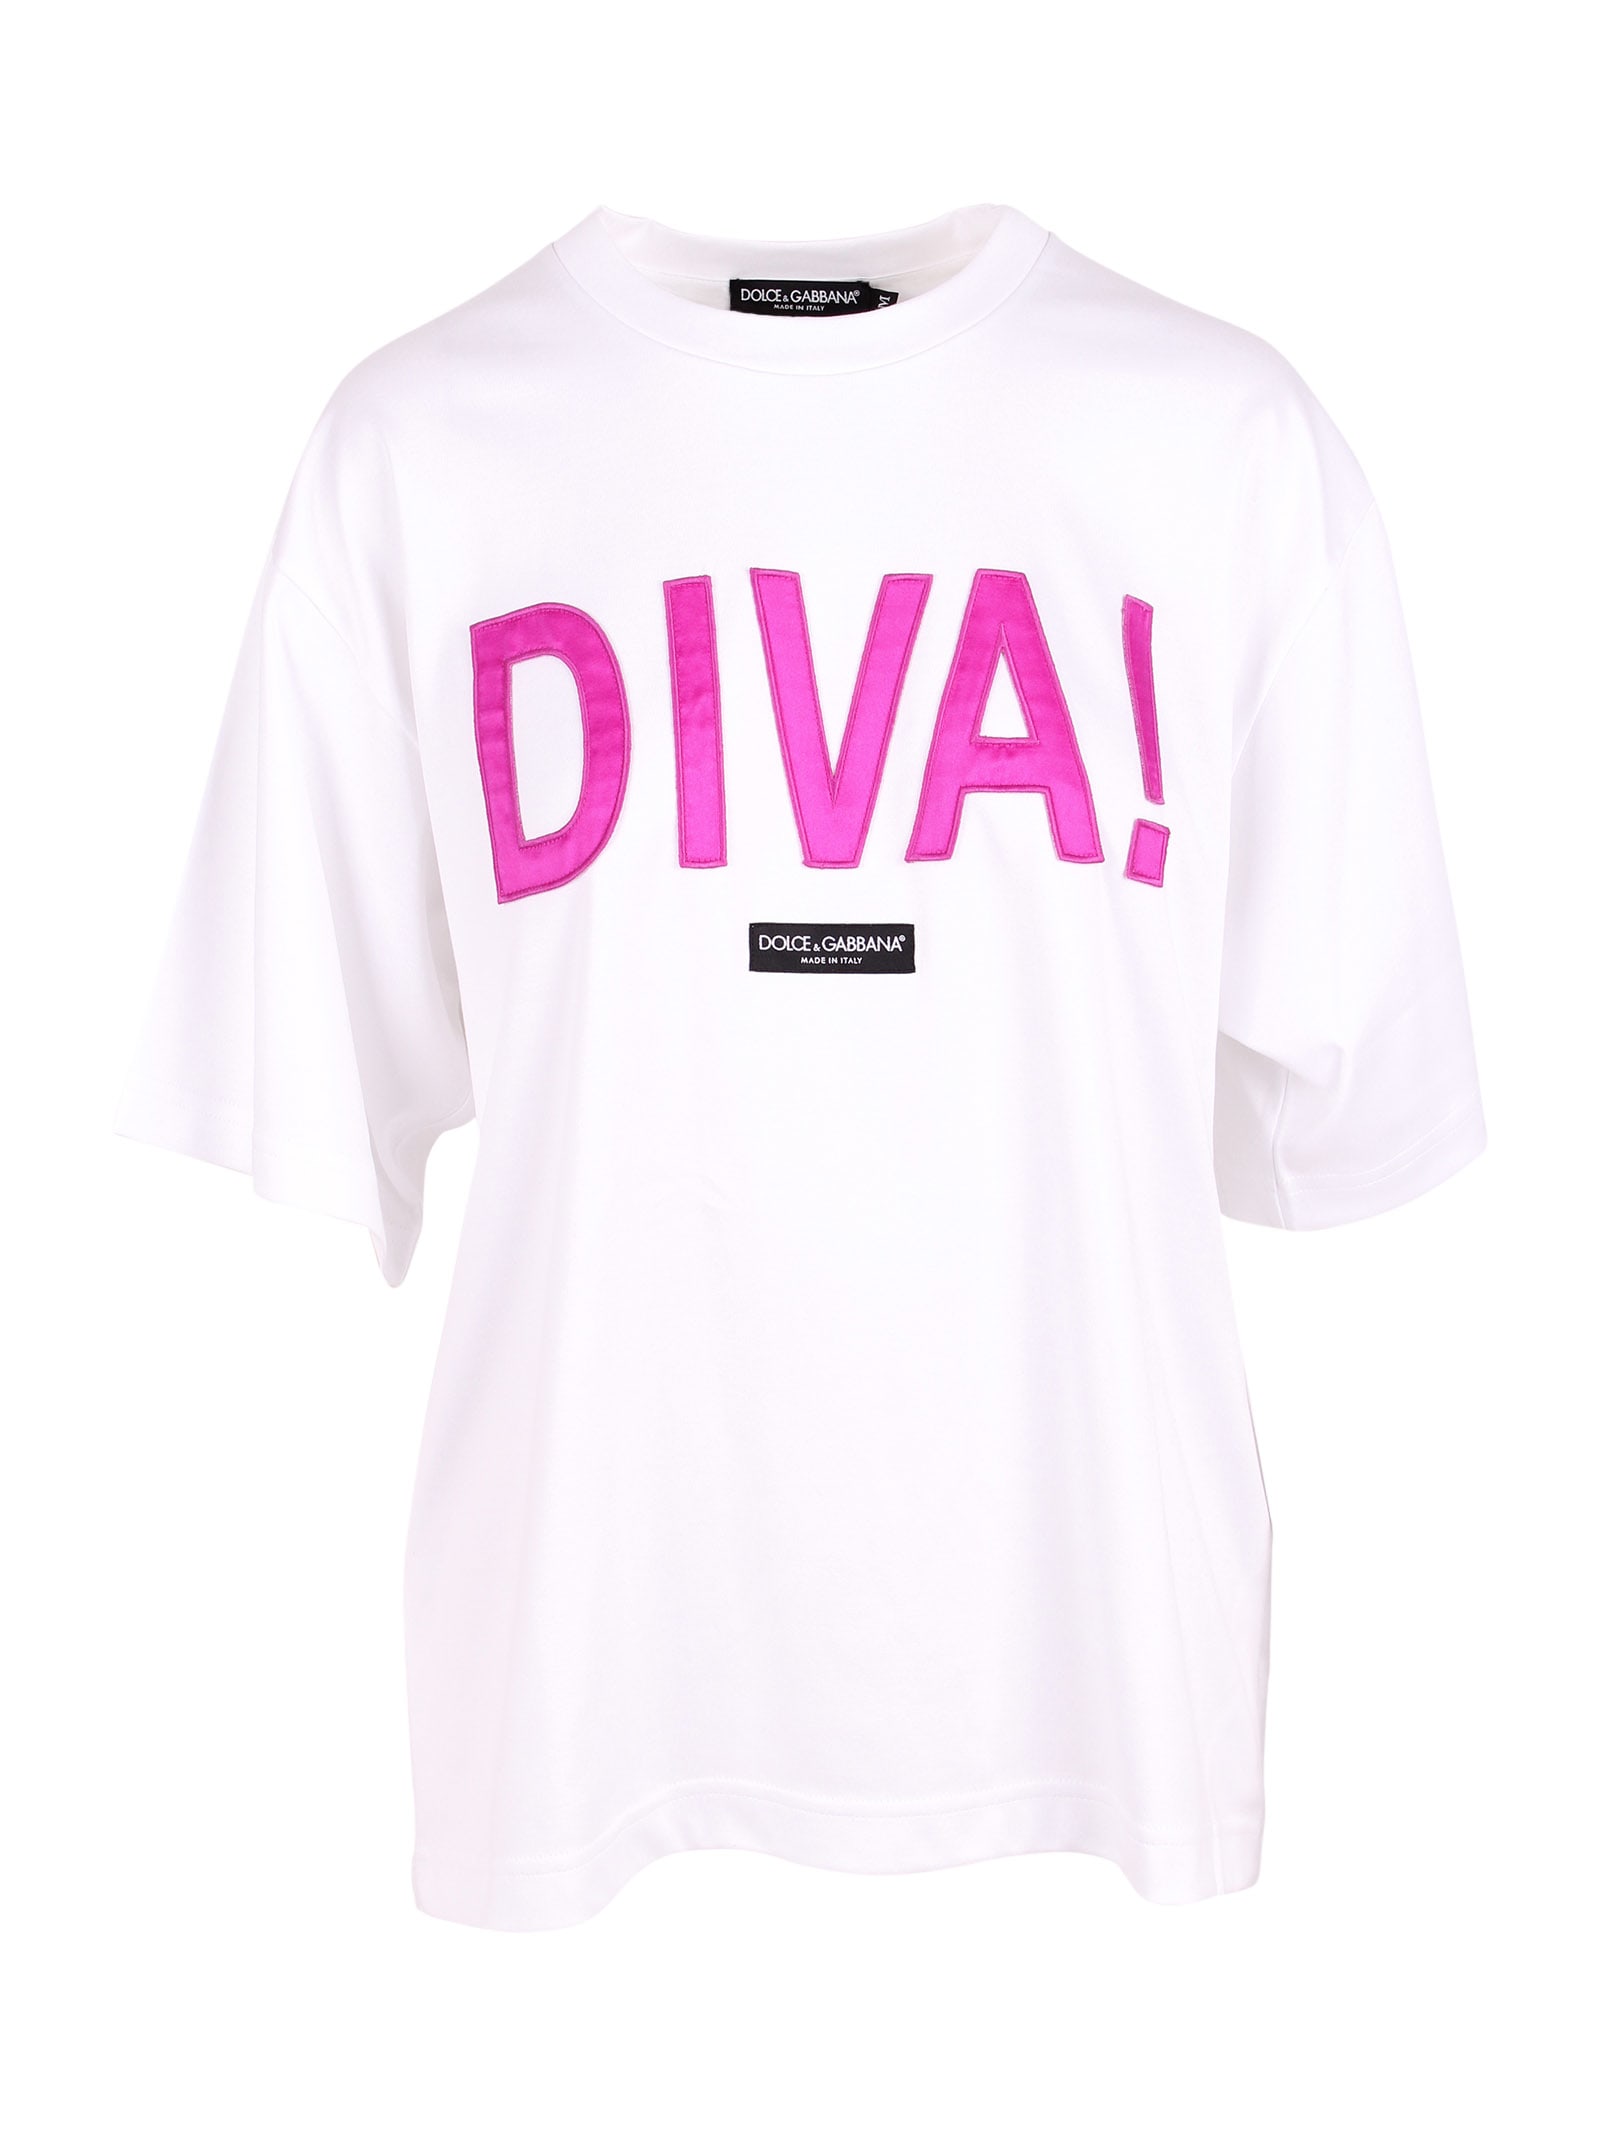 Dolce & Gabbana diva! Cotton T-shirt